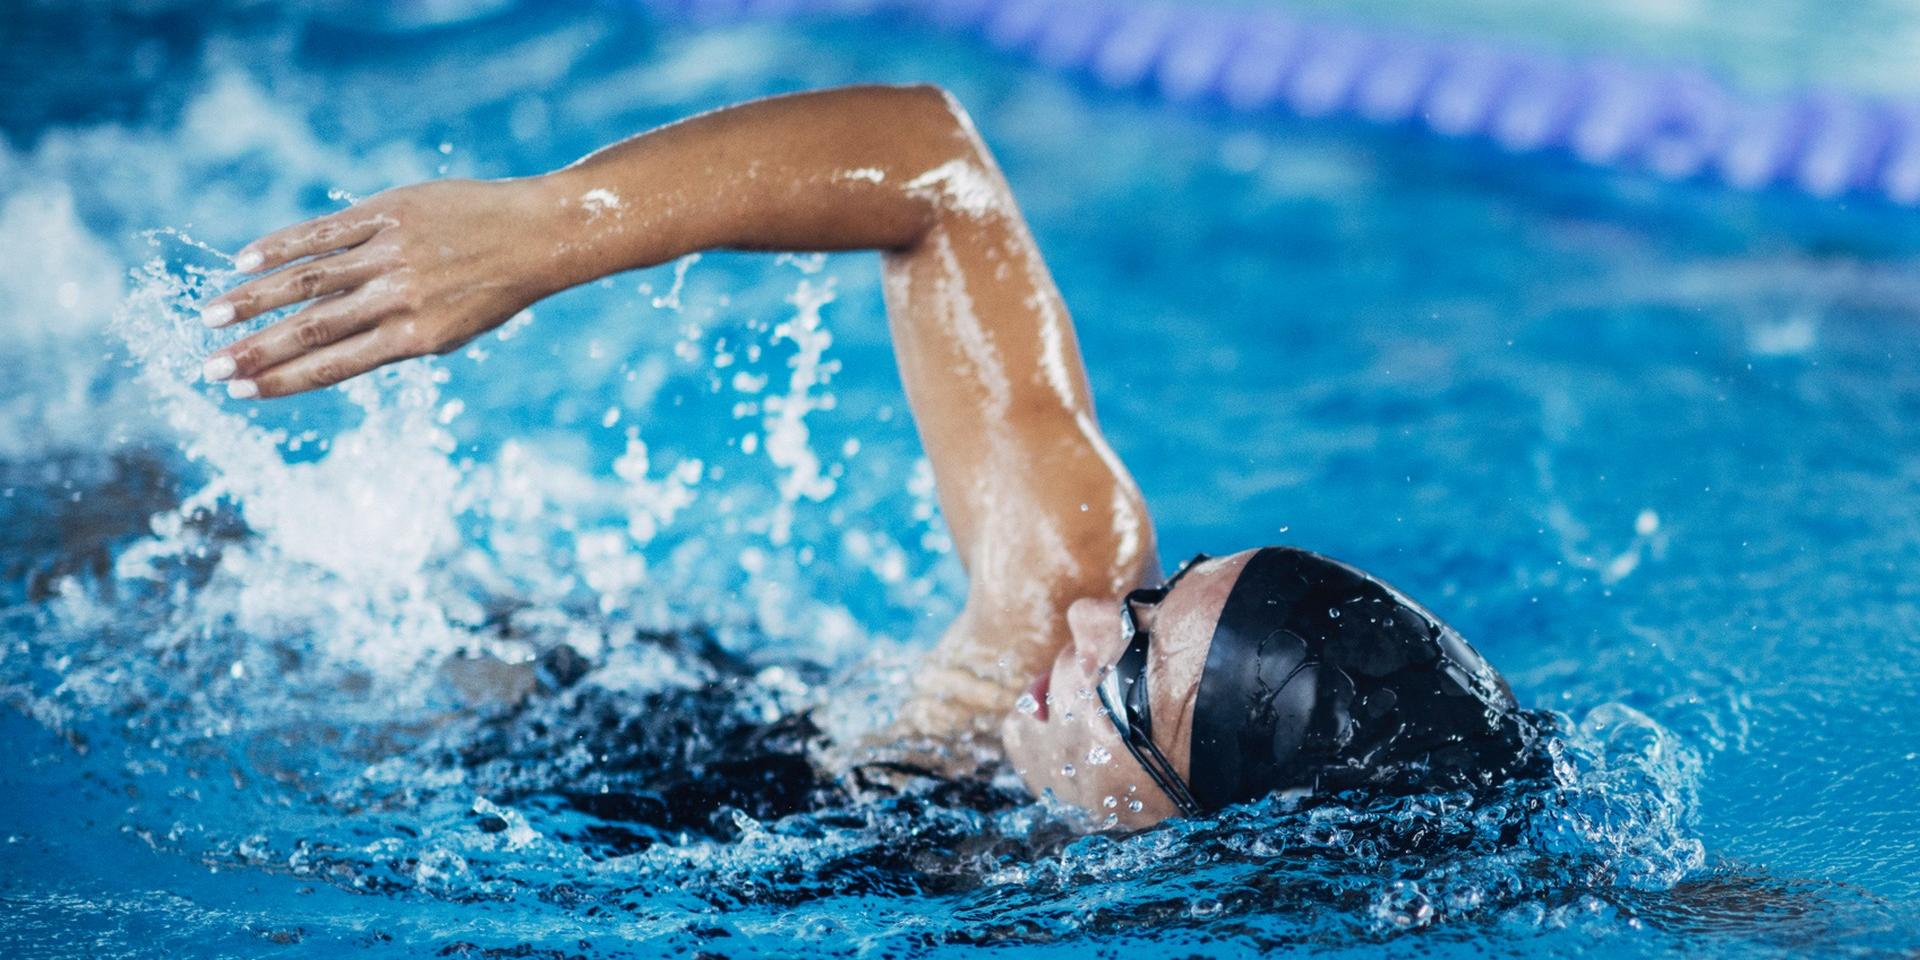 La natation, accessible et excellente pour la santé